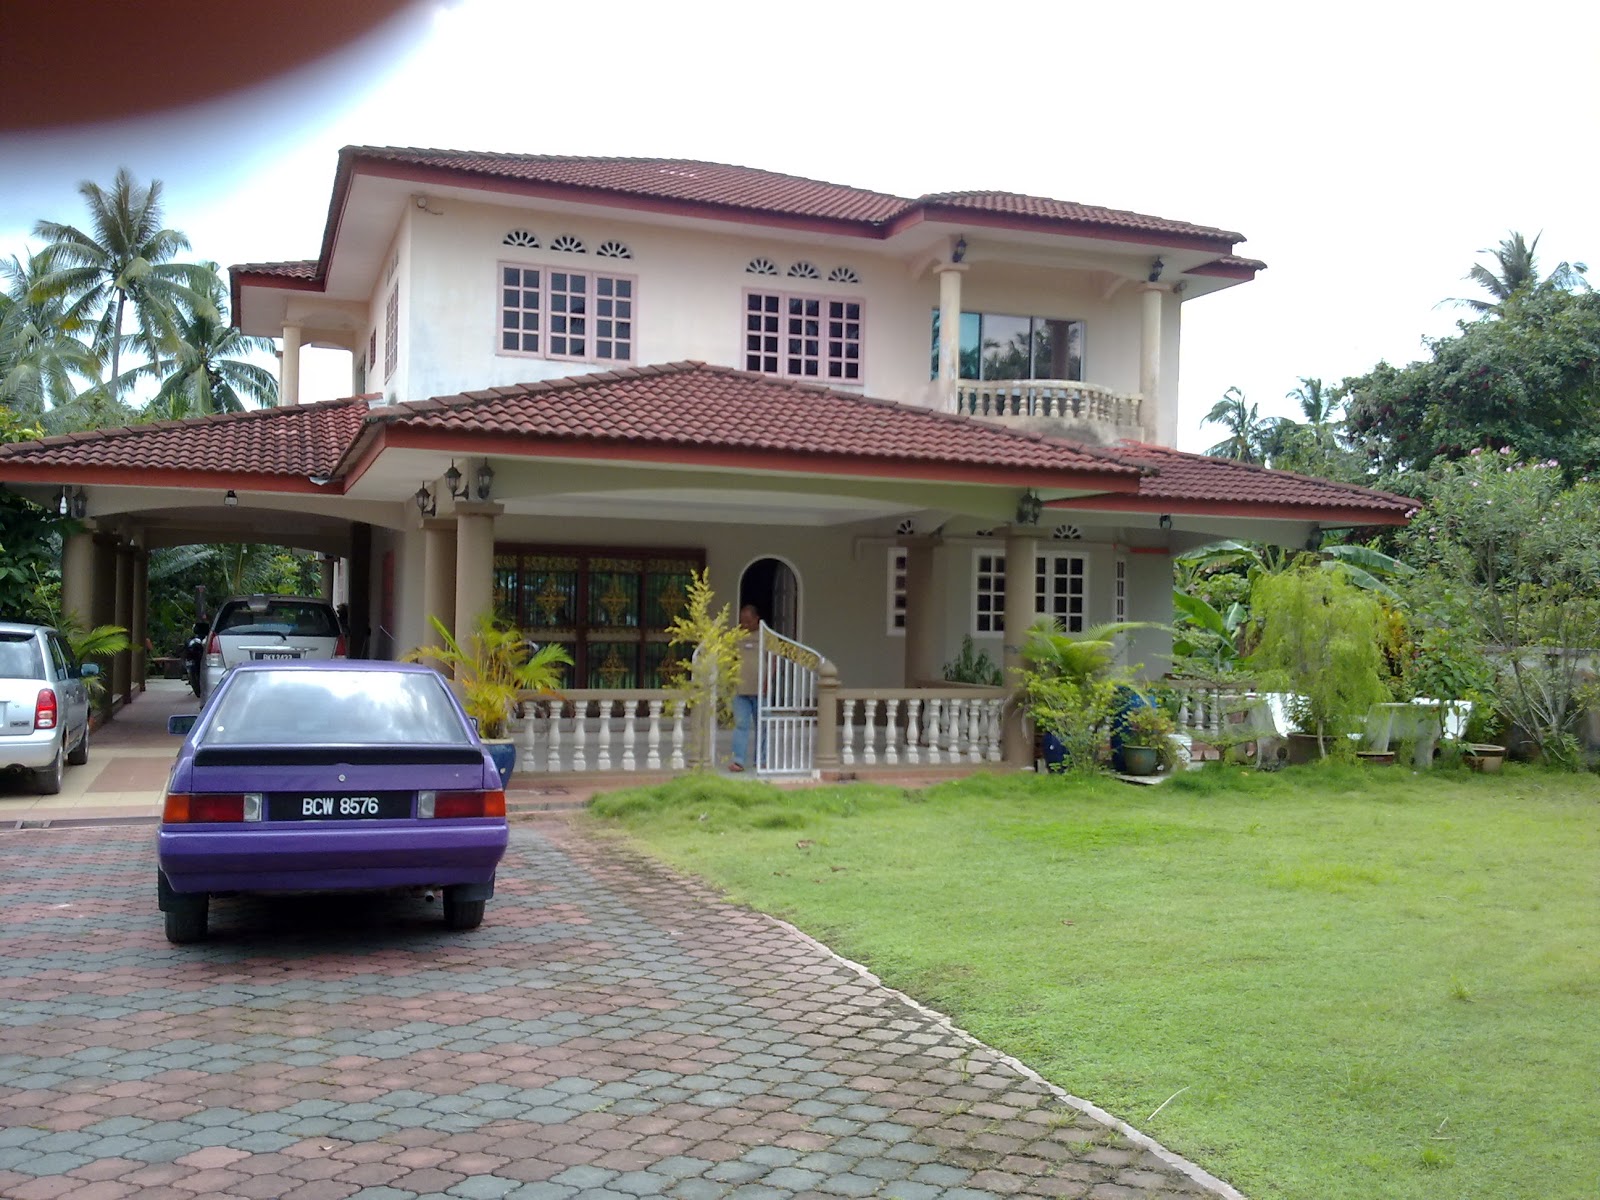  Rumah  Untuk  Dijual  Selangor  Tanah Dan Banglo di  